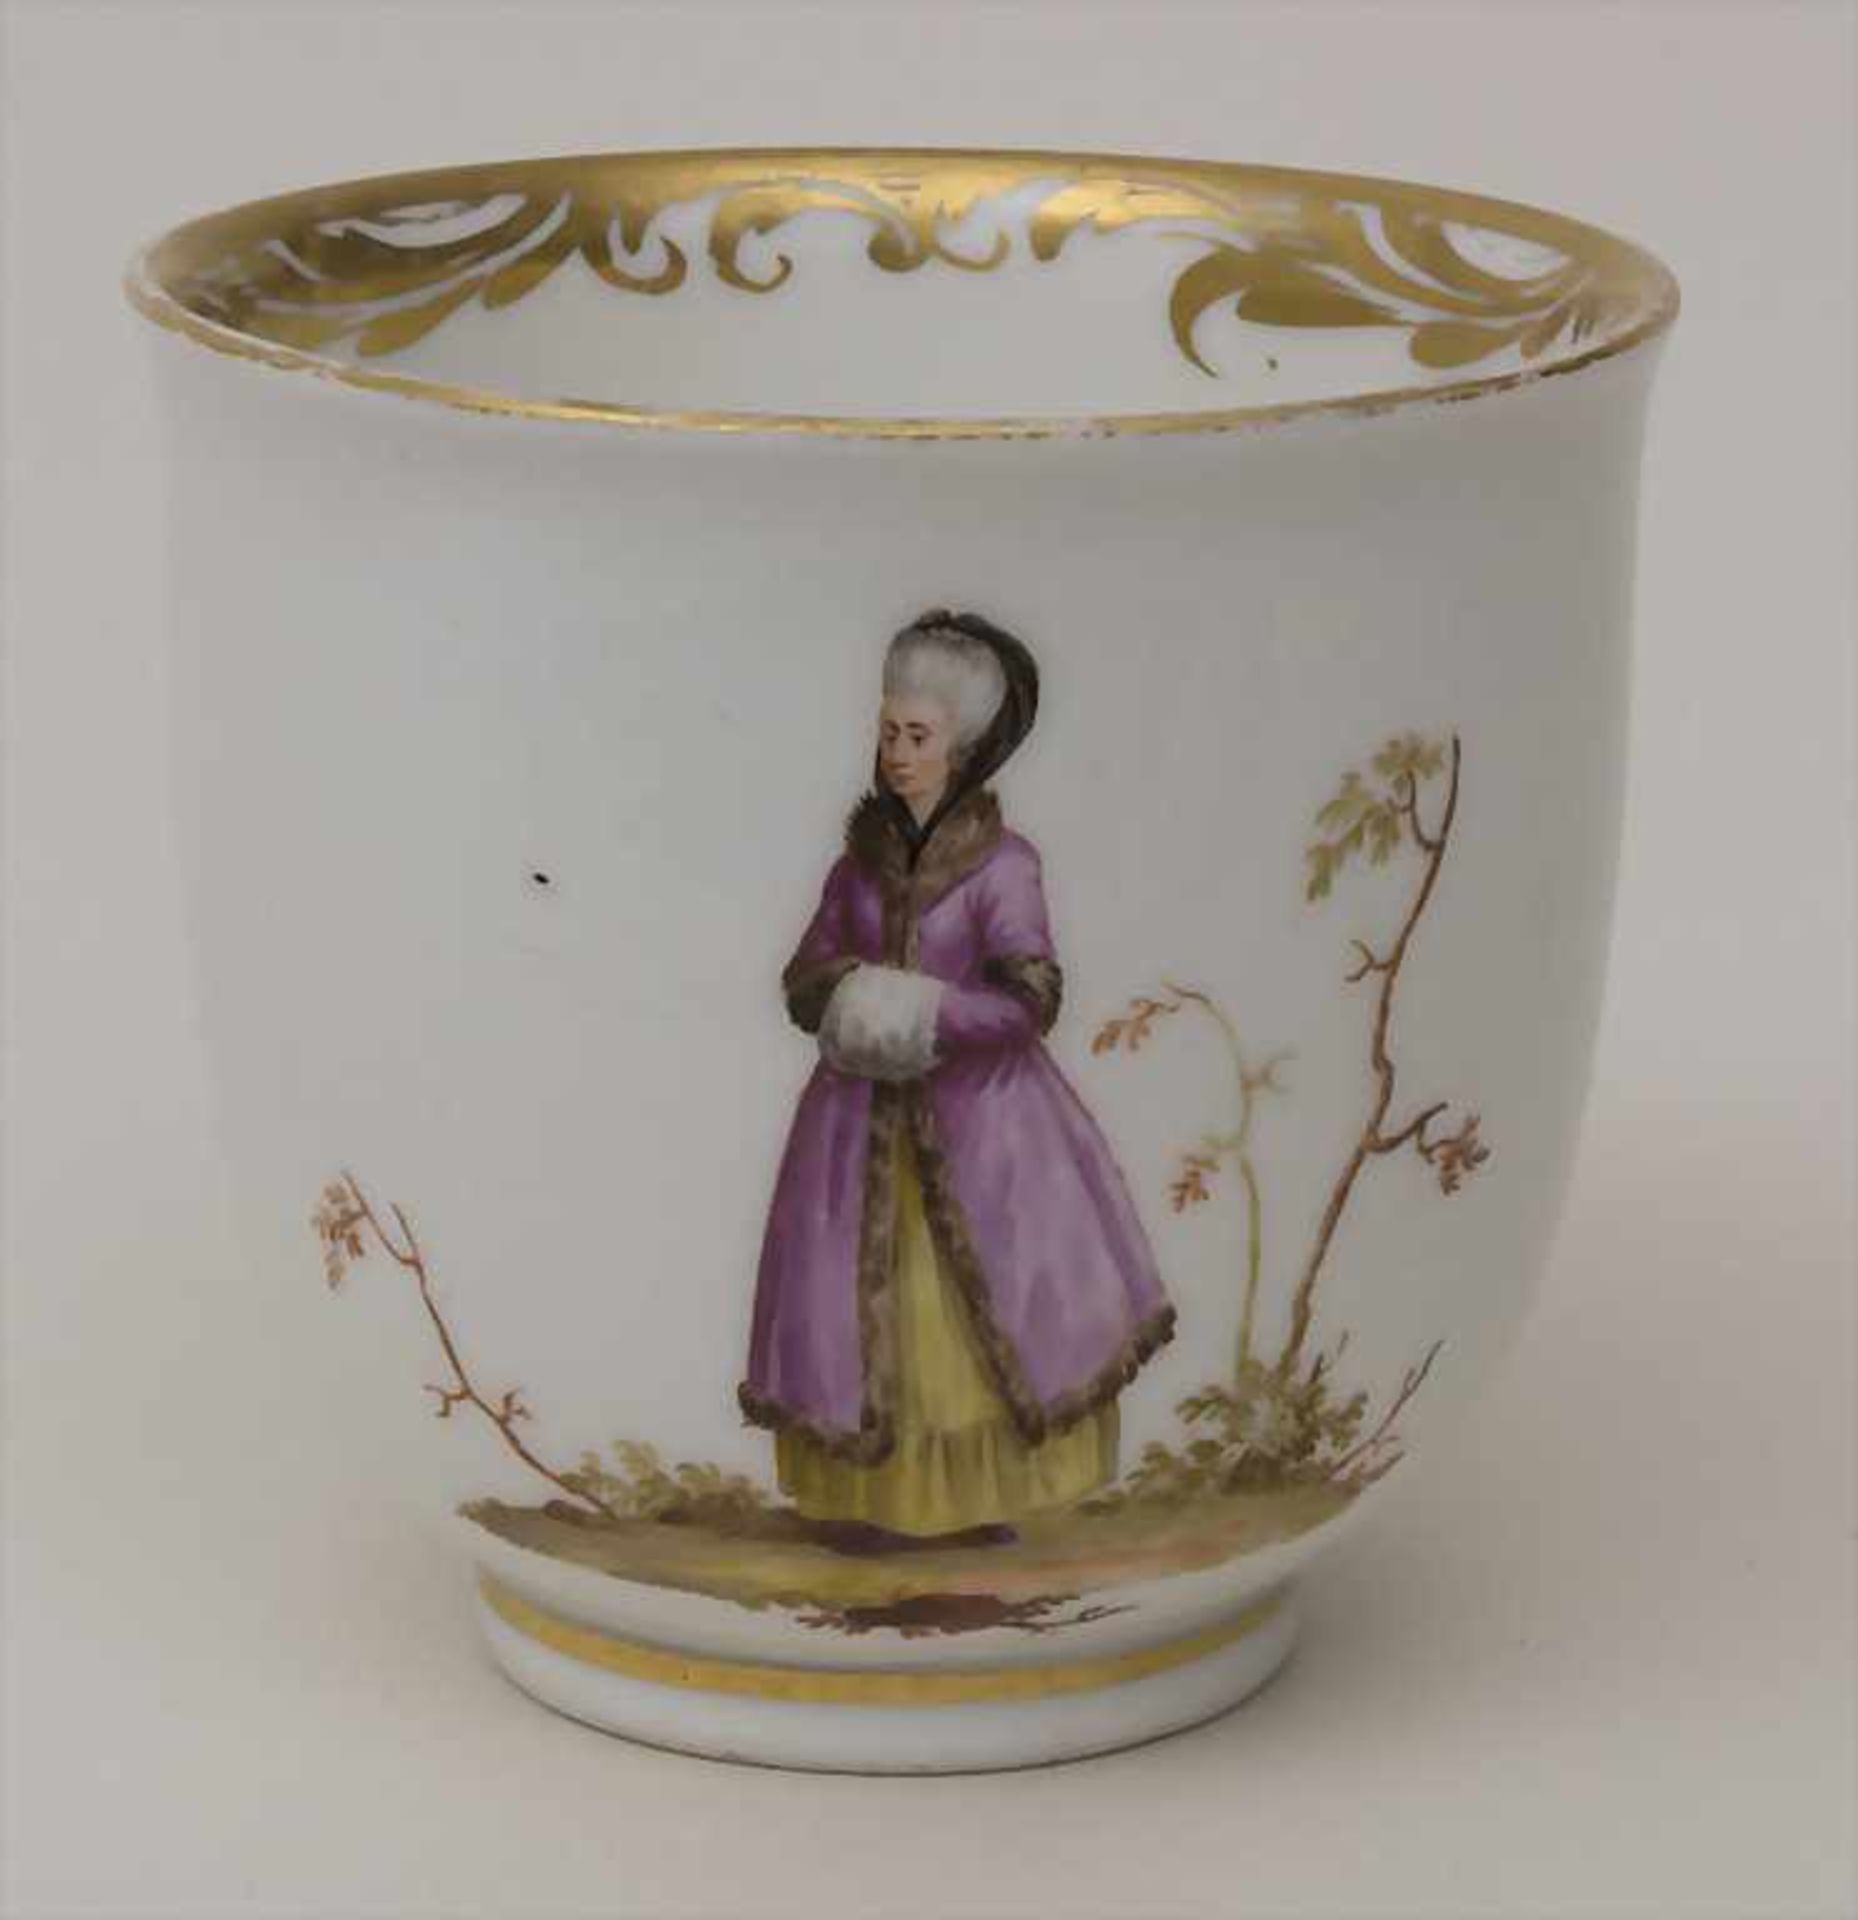 Tasse mit Darstellung einer Dame mit Muff / A cup depicting a lady with a muff, Wien / Vienna, 18.